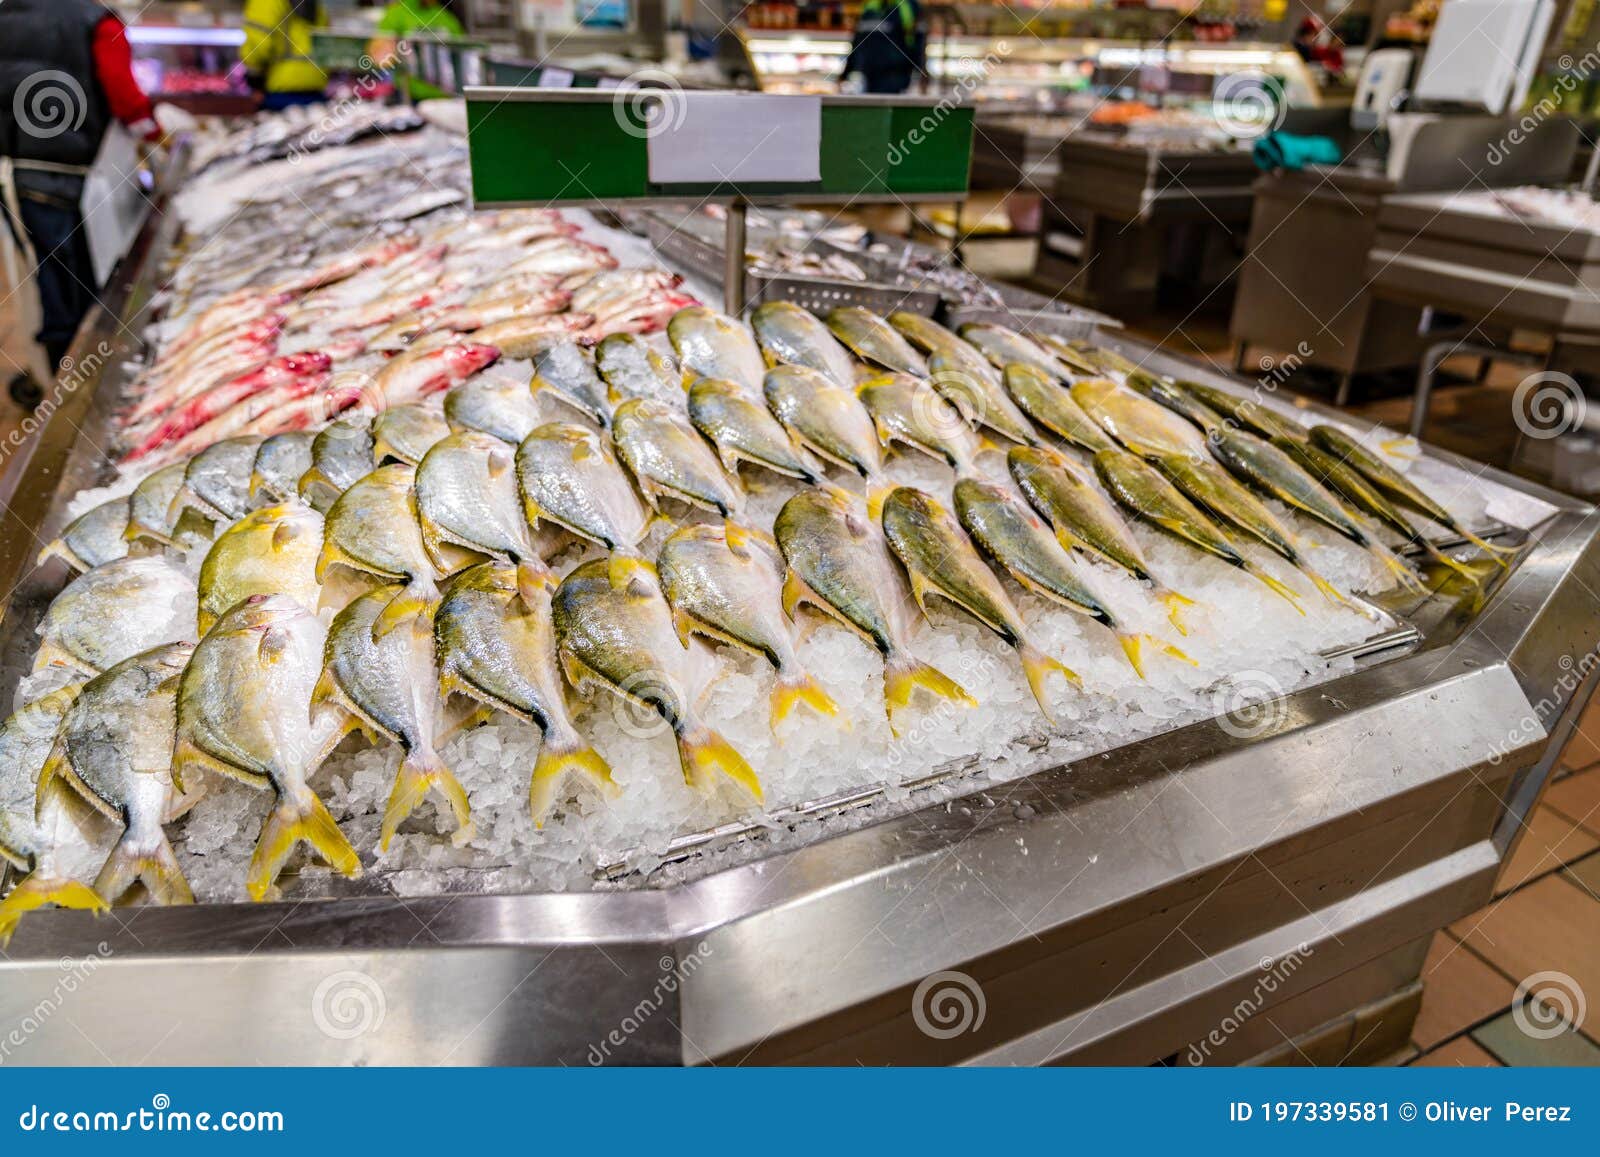 fish displayed on ice at supermarket seafood aisle